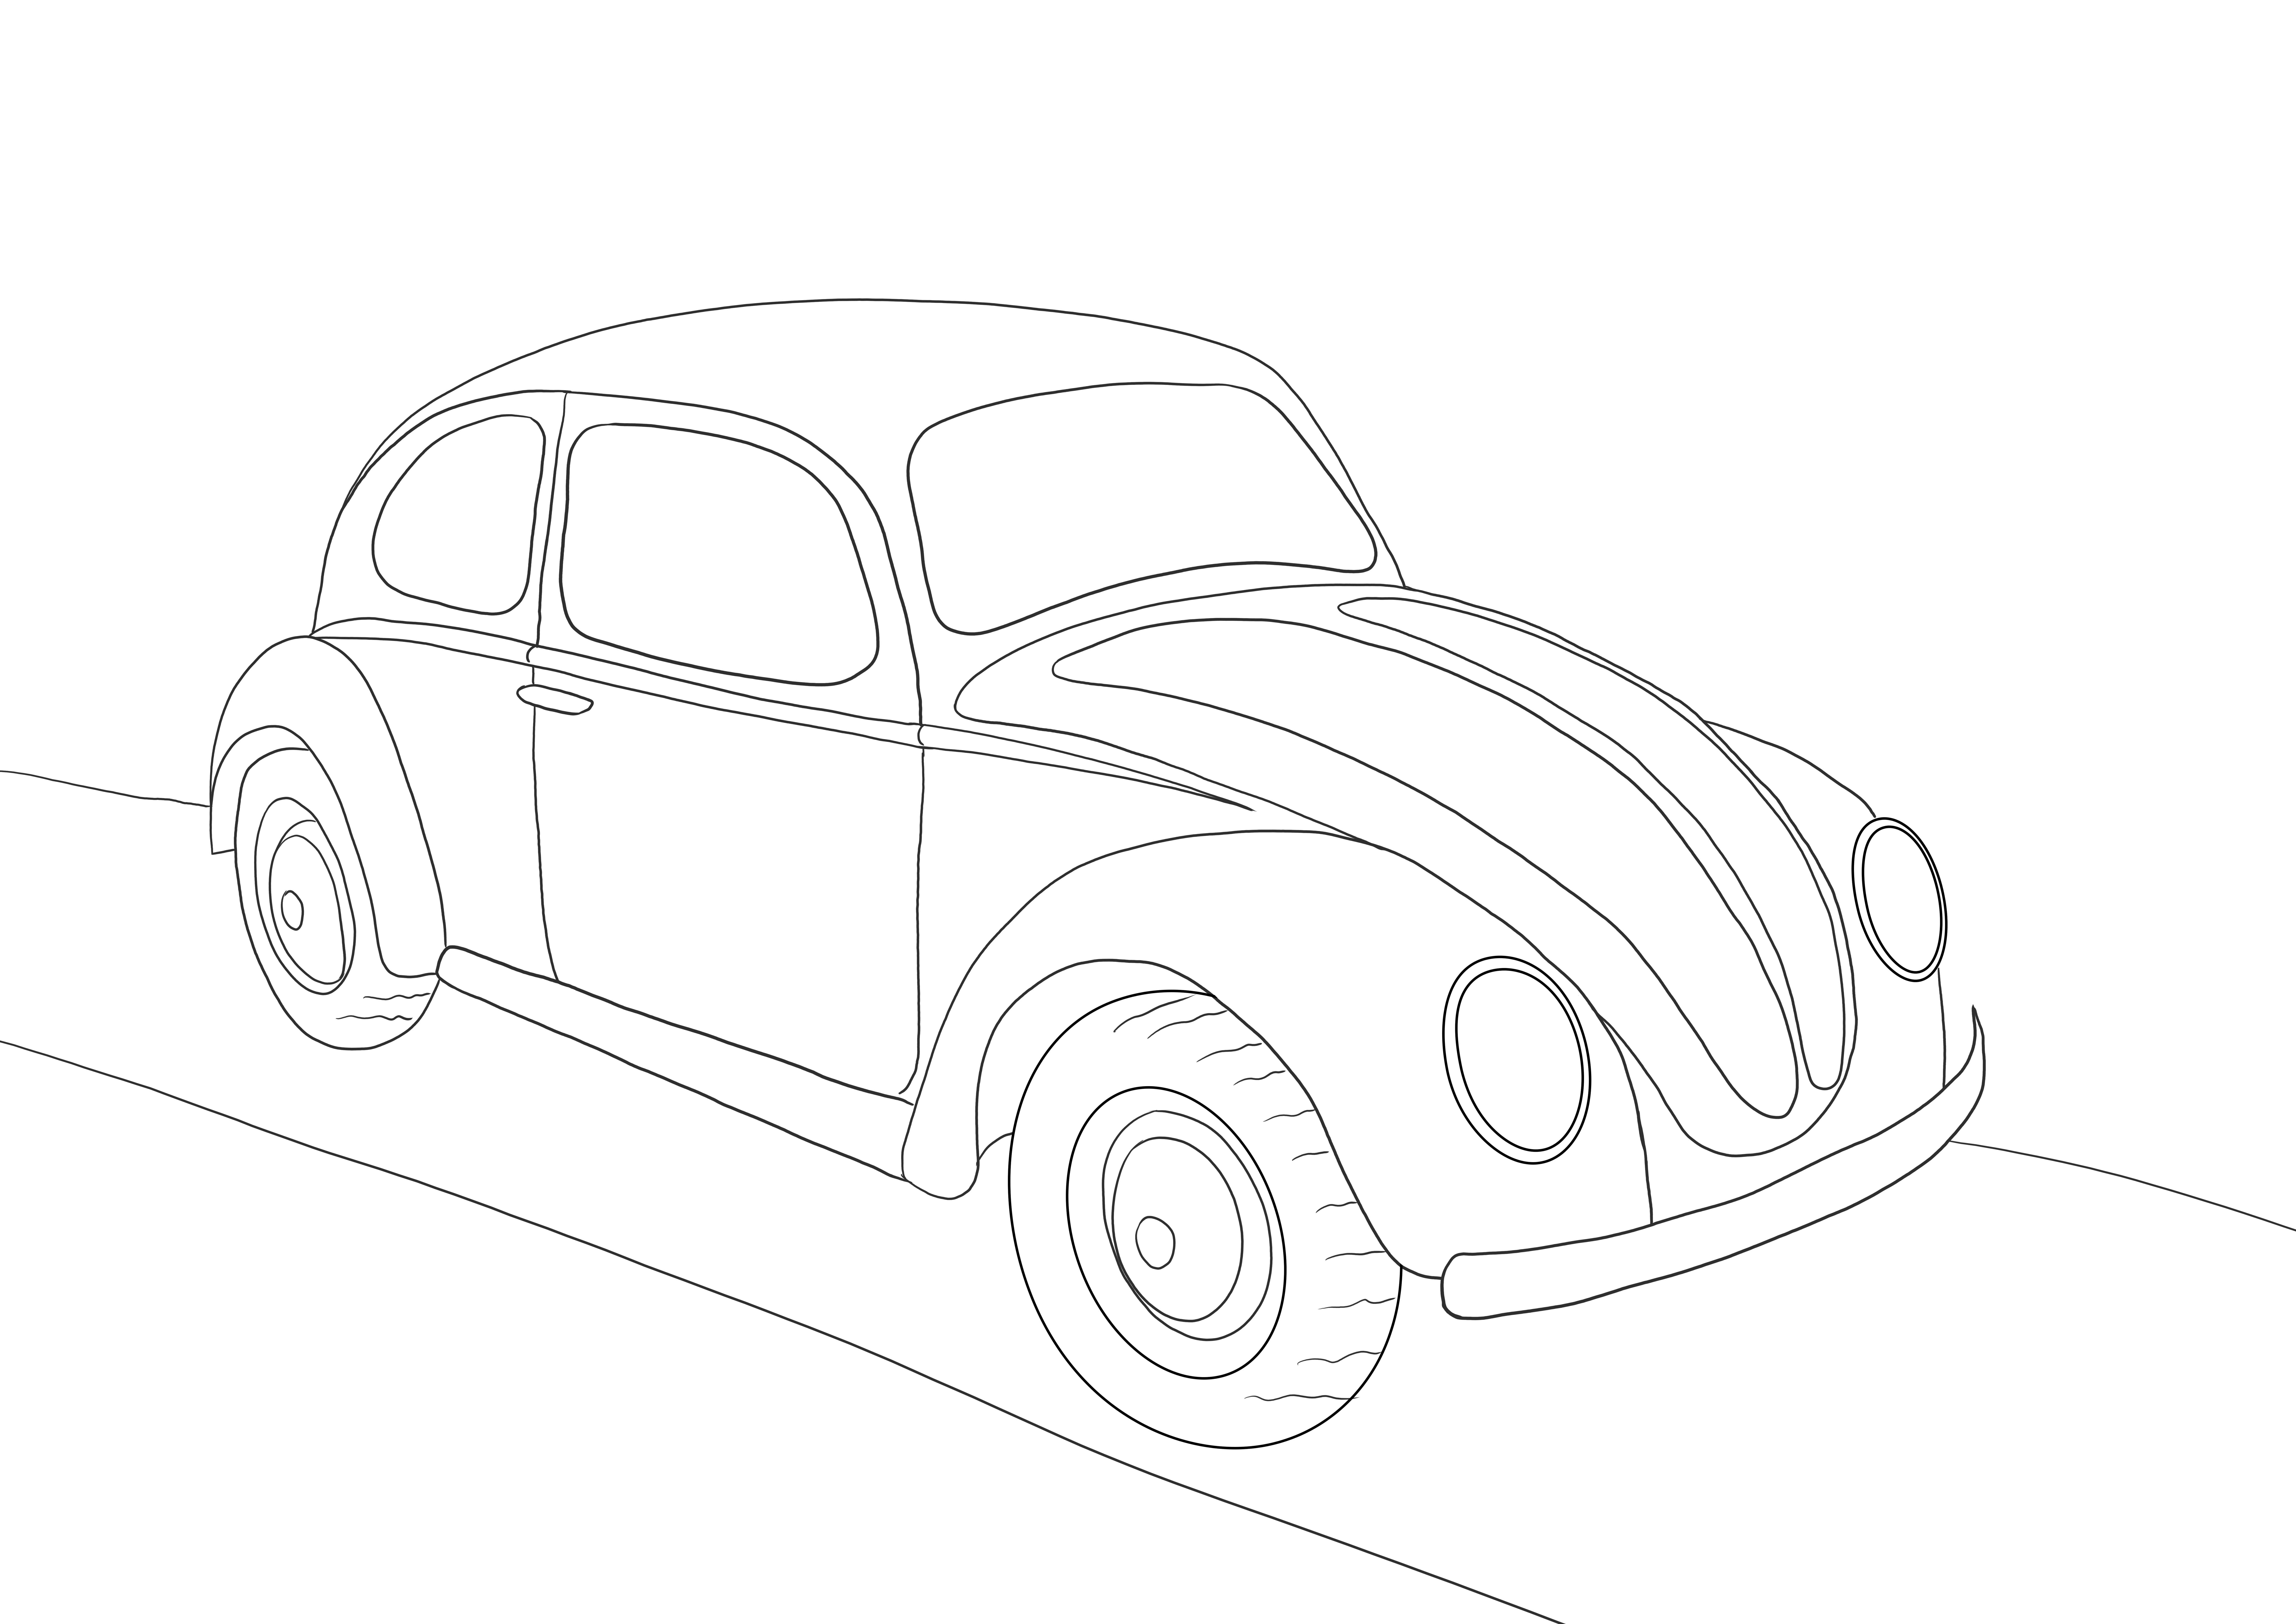 Volkswagen Beetle imprimabil gratuit pentru colorat sau salvare pentru o poză ulterioară